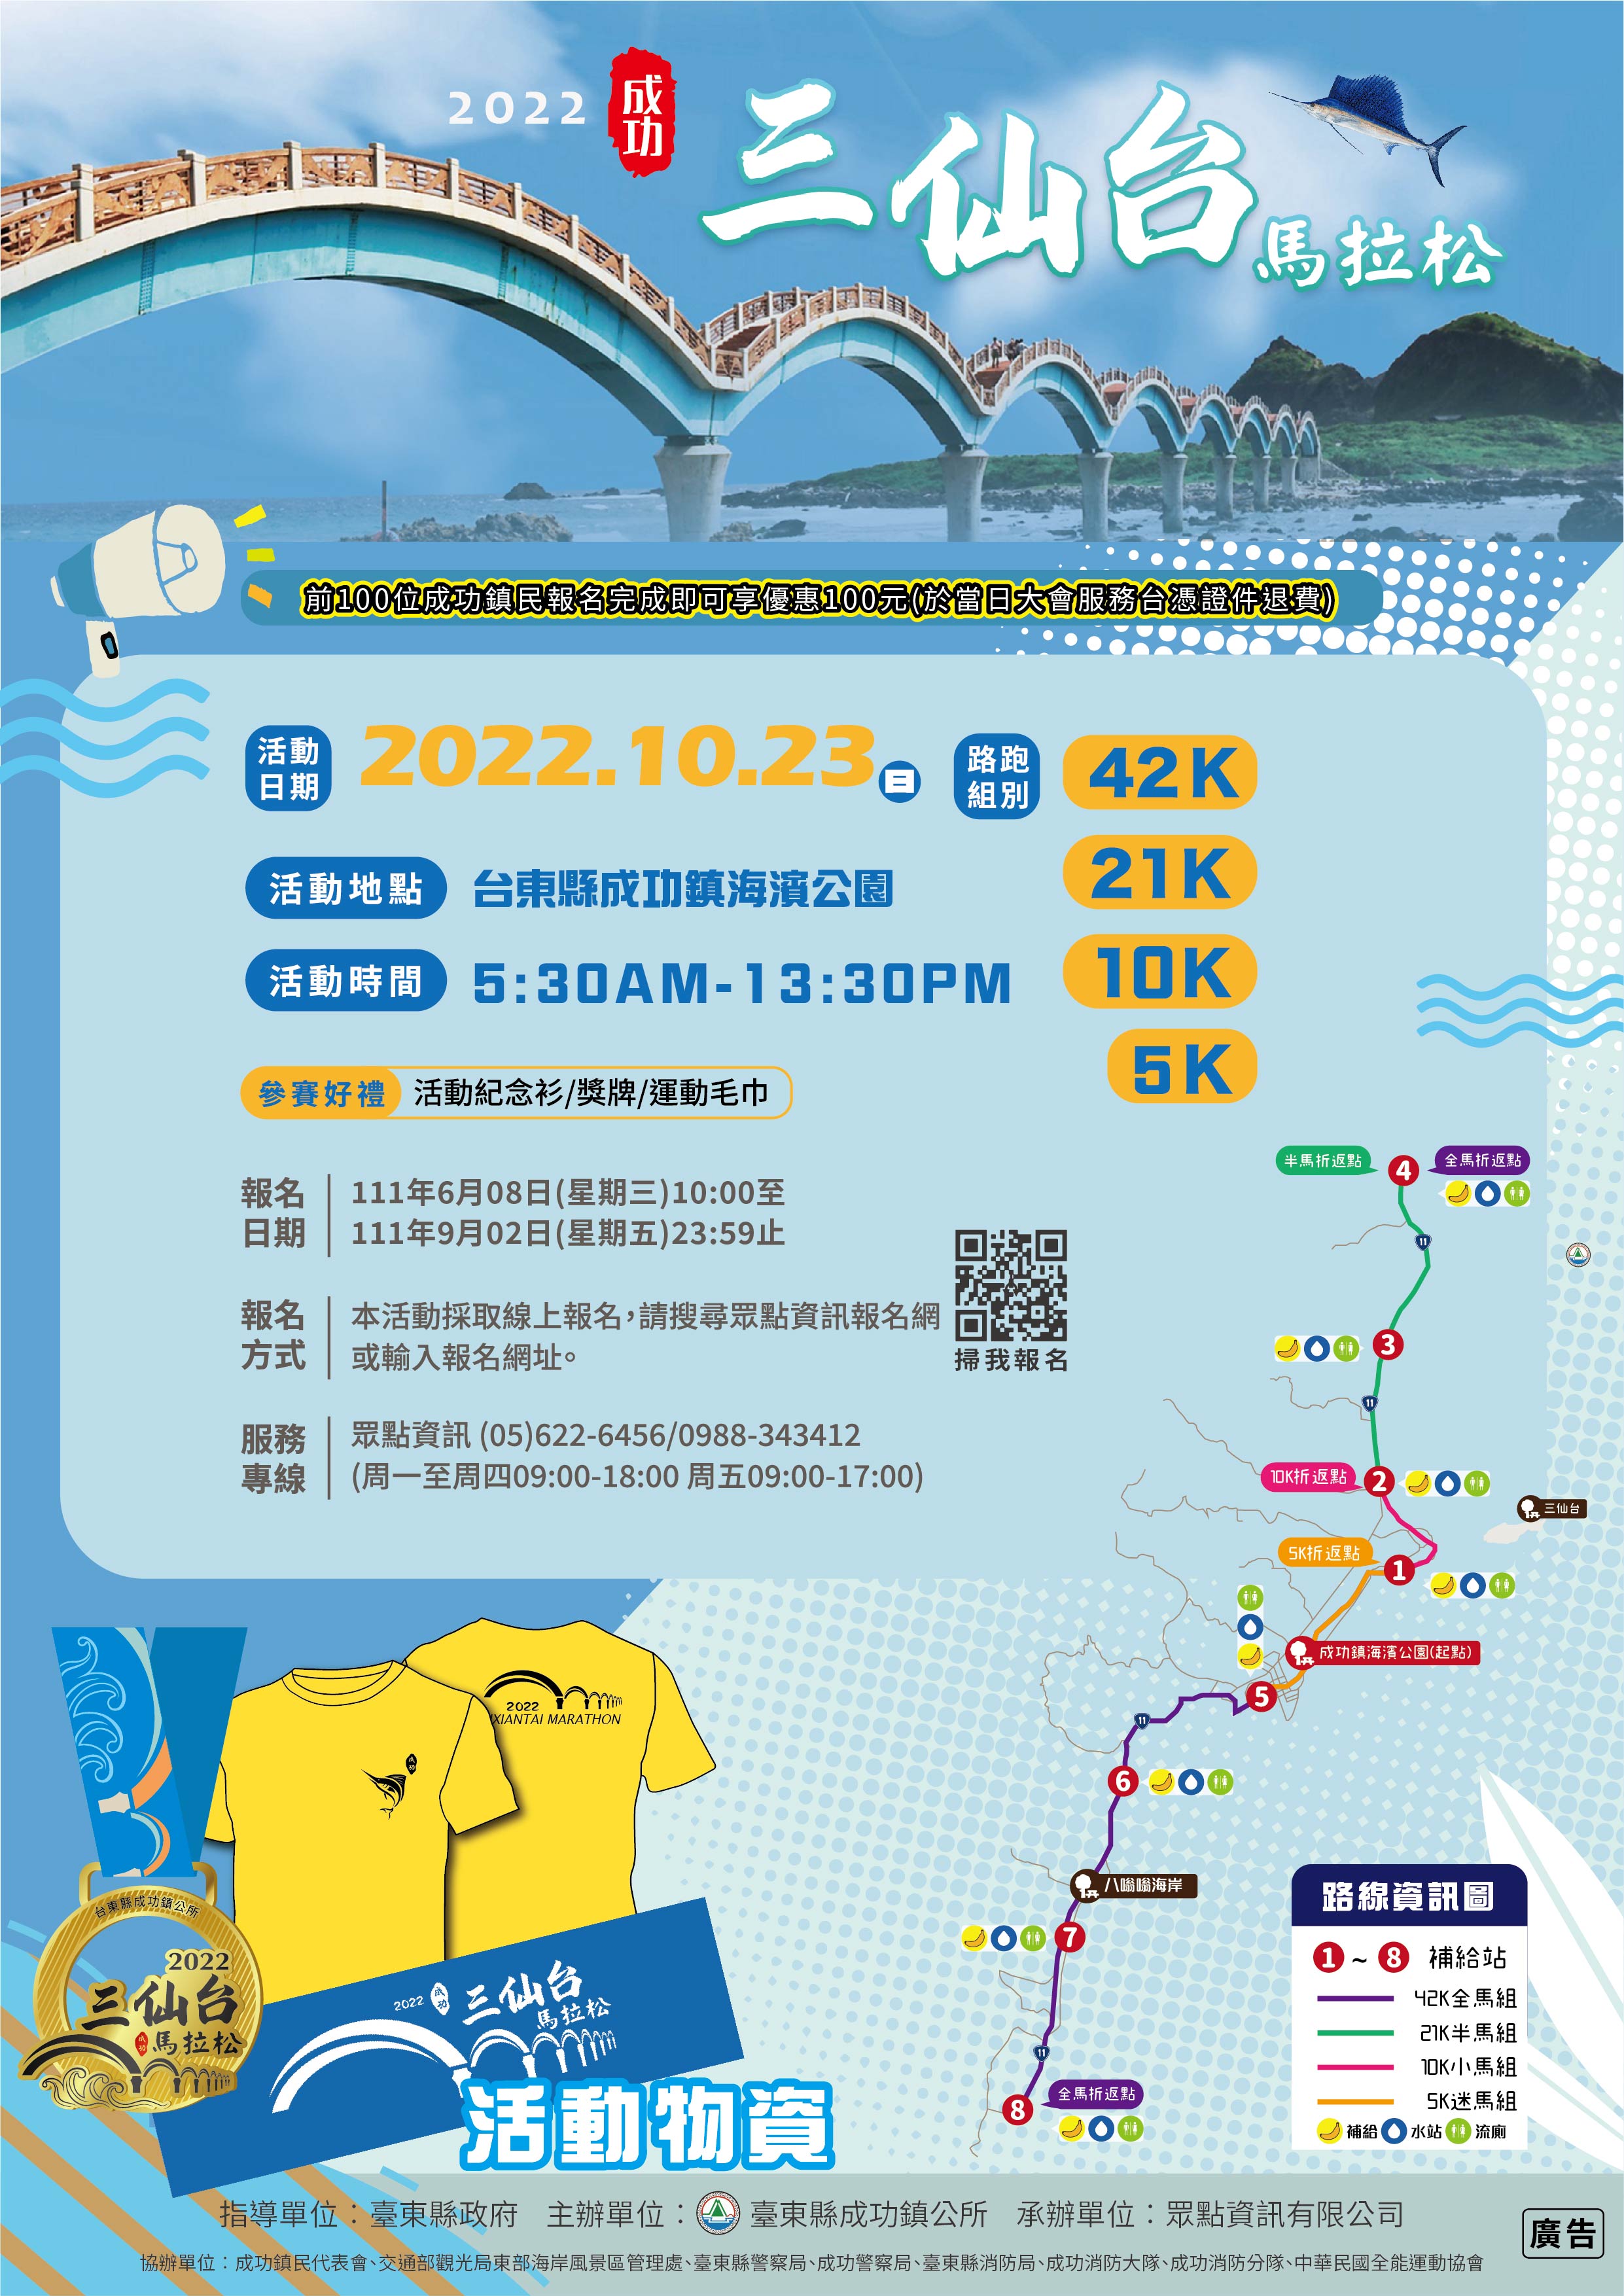 「2022成功三仙台馬拉松」活動線上報名自即日起至9月2日止